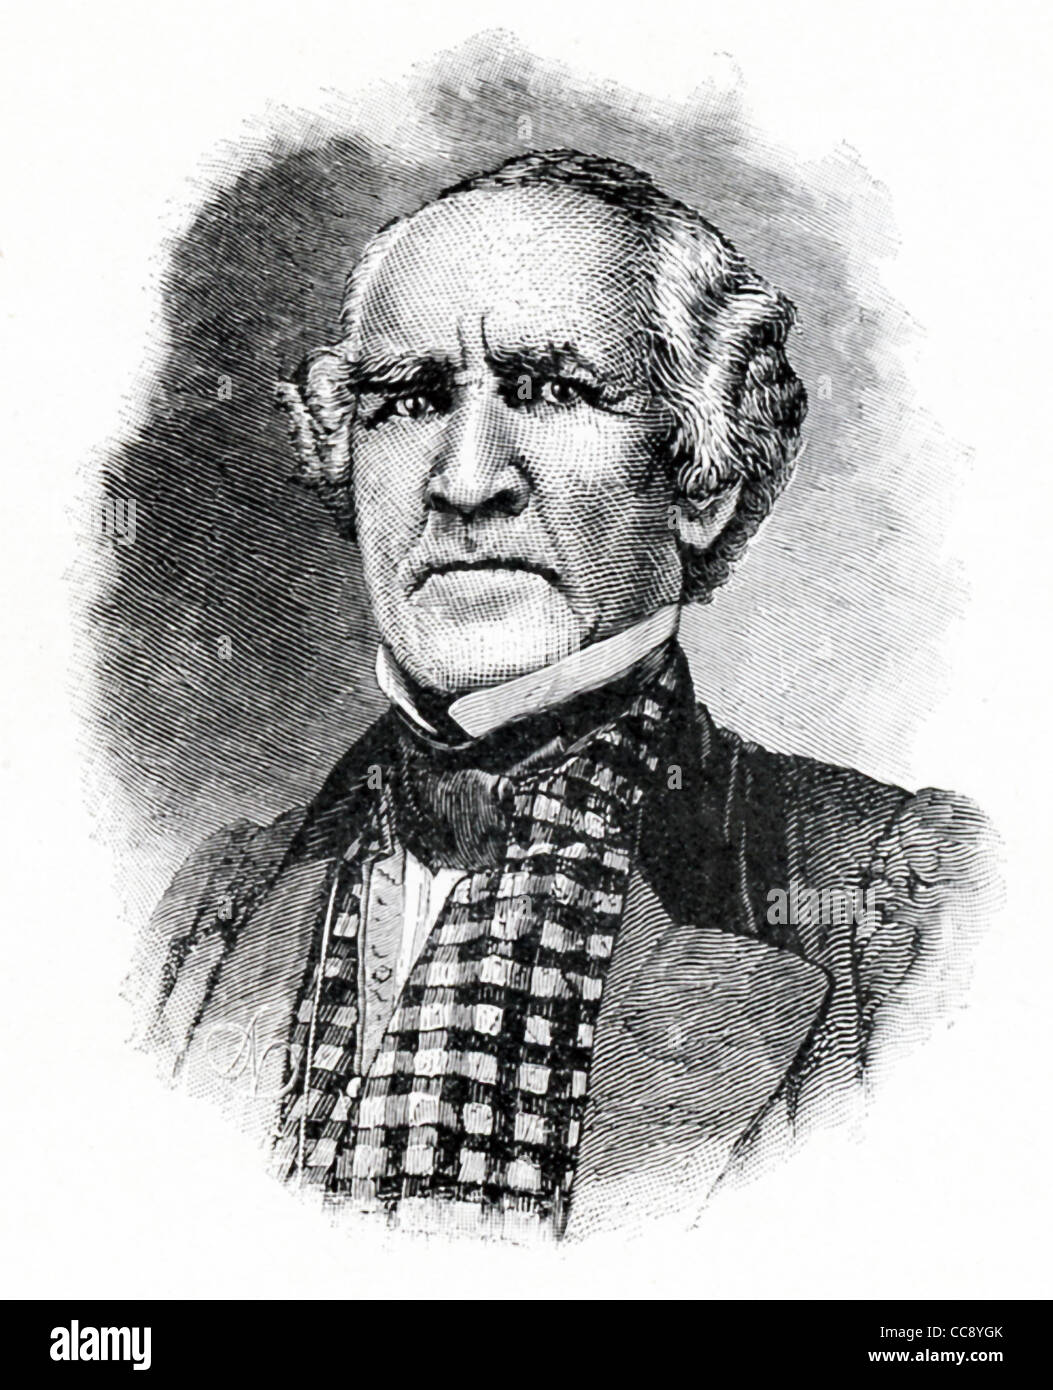 Cette illustration est de général Sam Houston (1793-1863), un héros et un homme d'état frontière du Texas. Banque D'Images